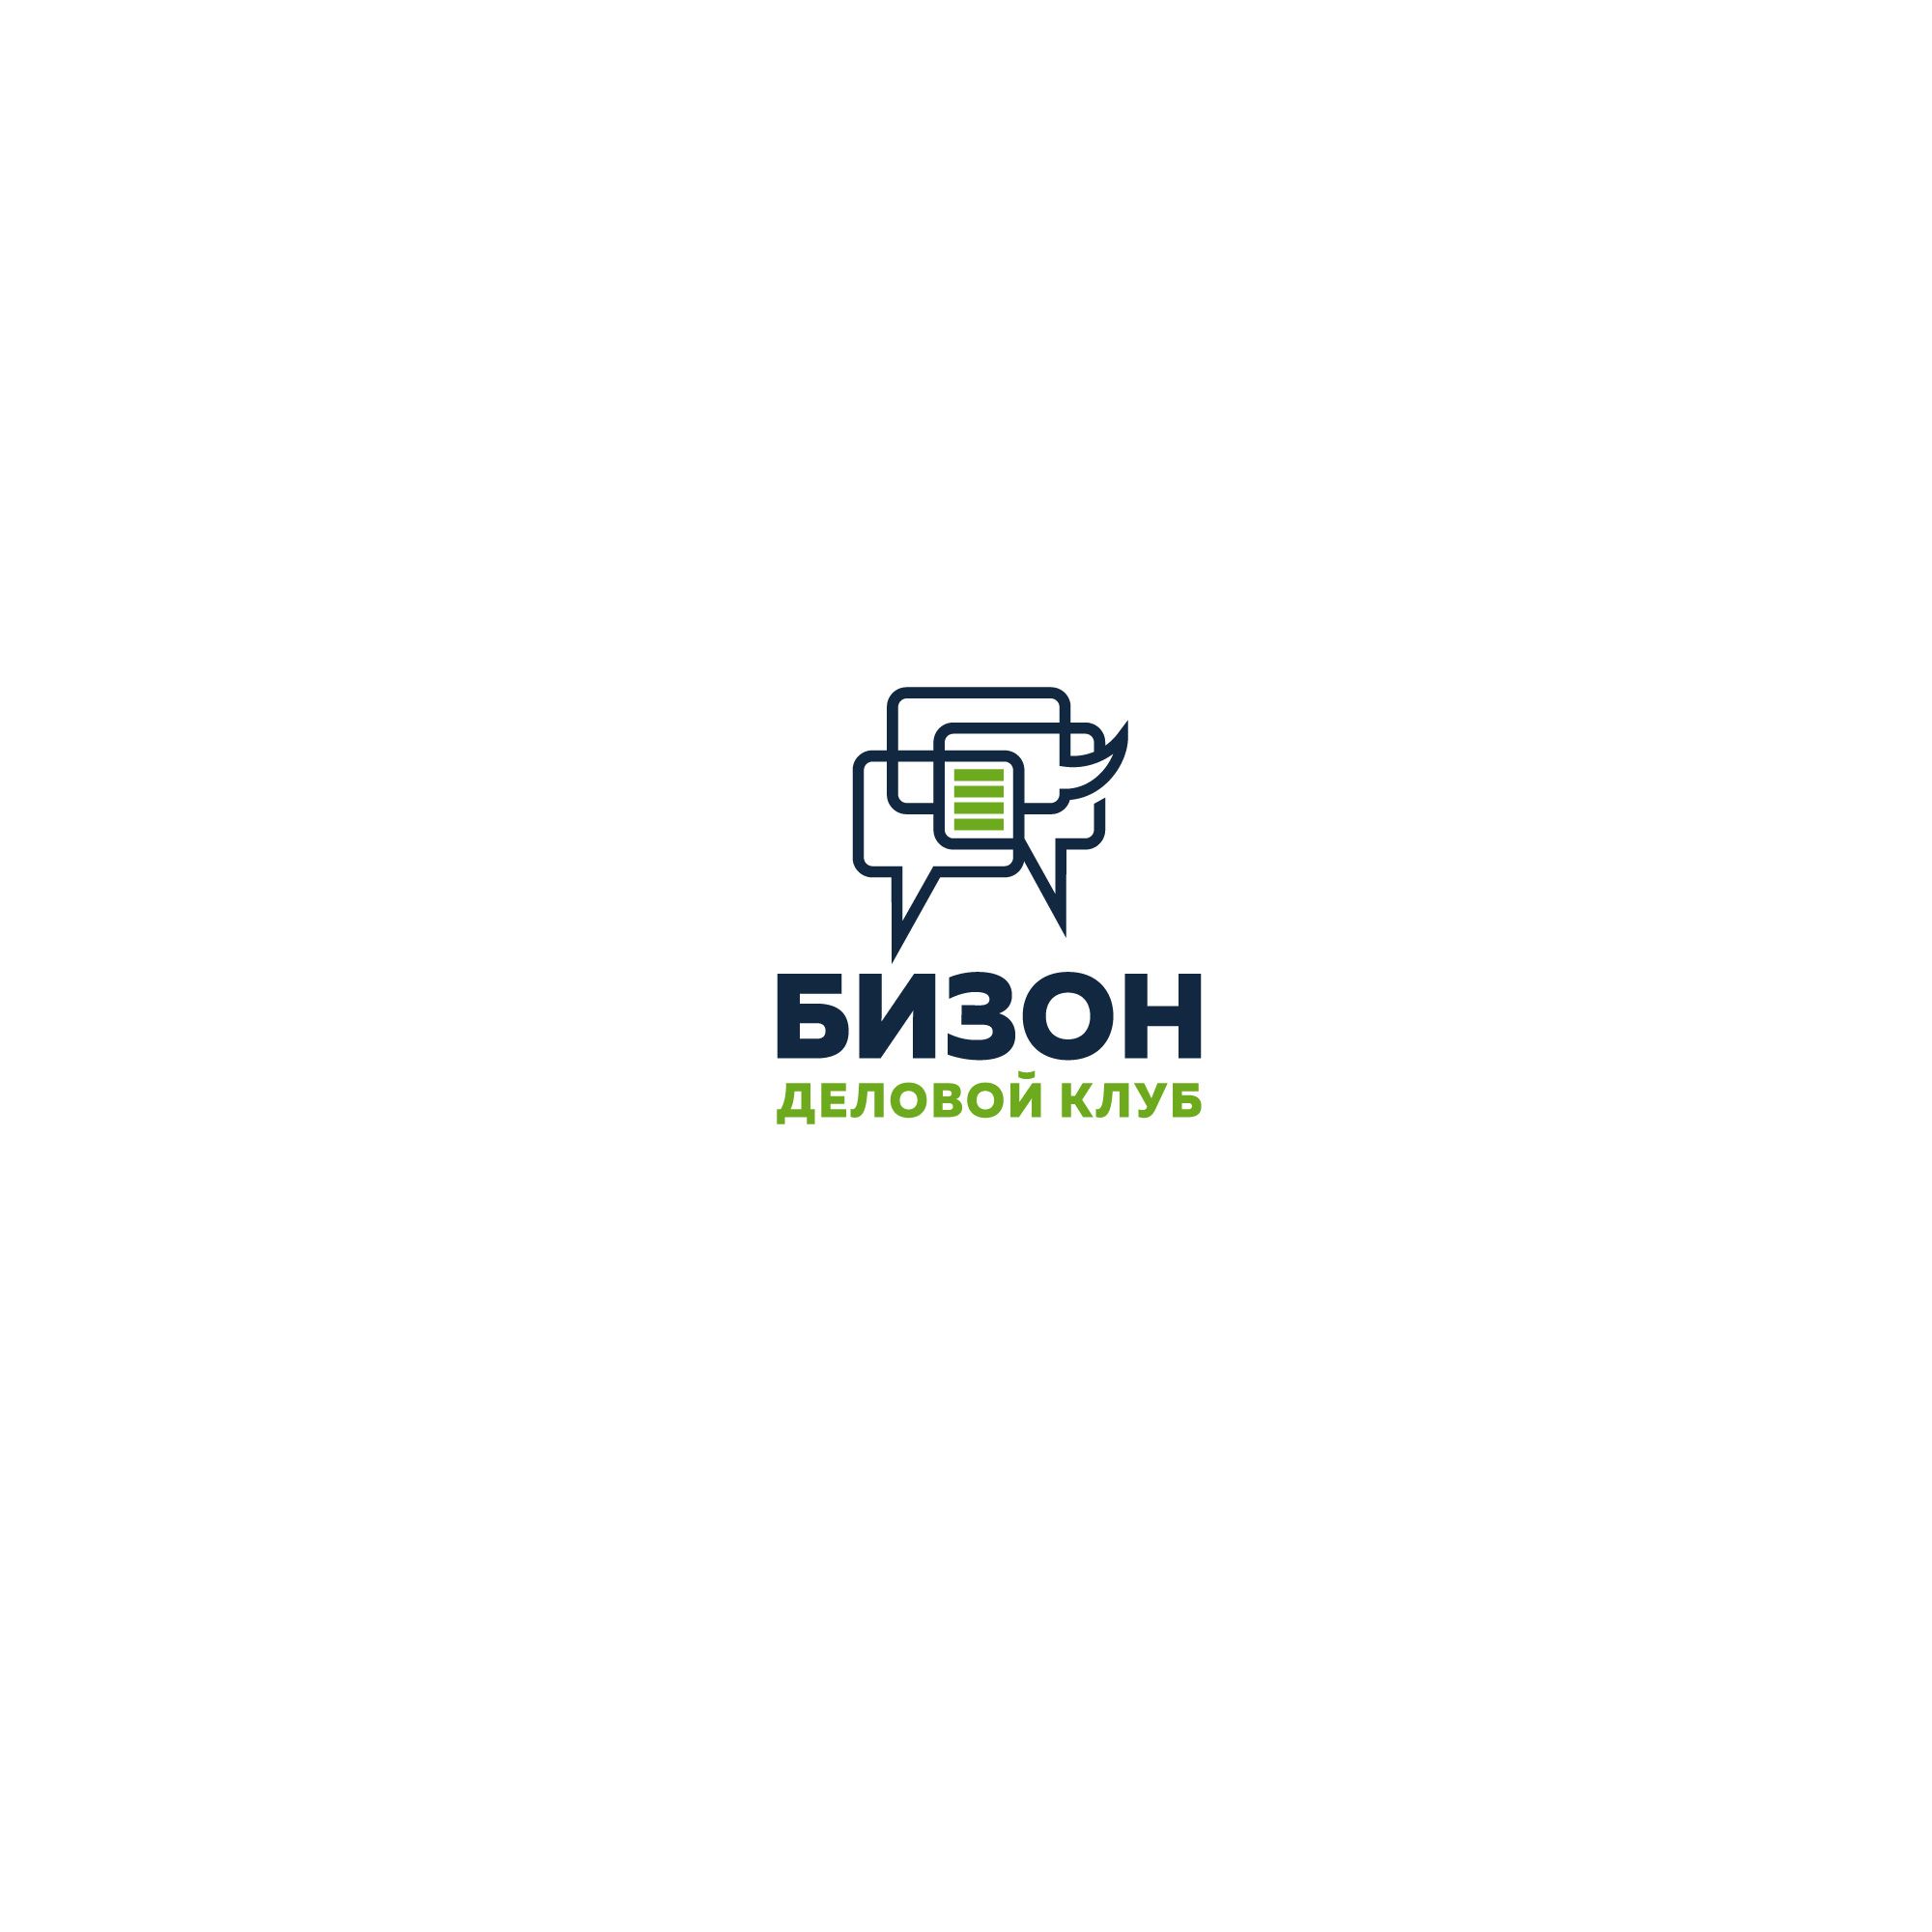 Логотип для «БИЗОН» или «БИЗНЕС-ЗОНА» (полное название) - дизайнер designer12345